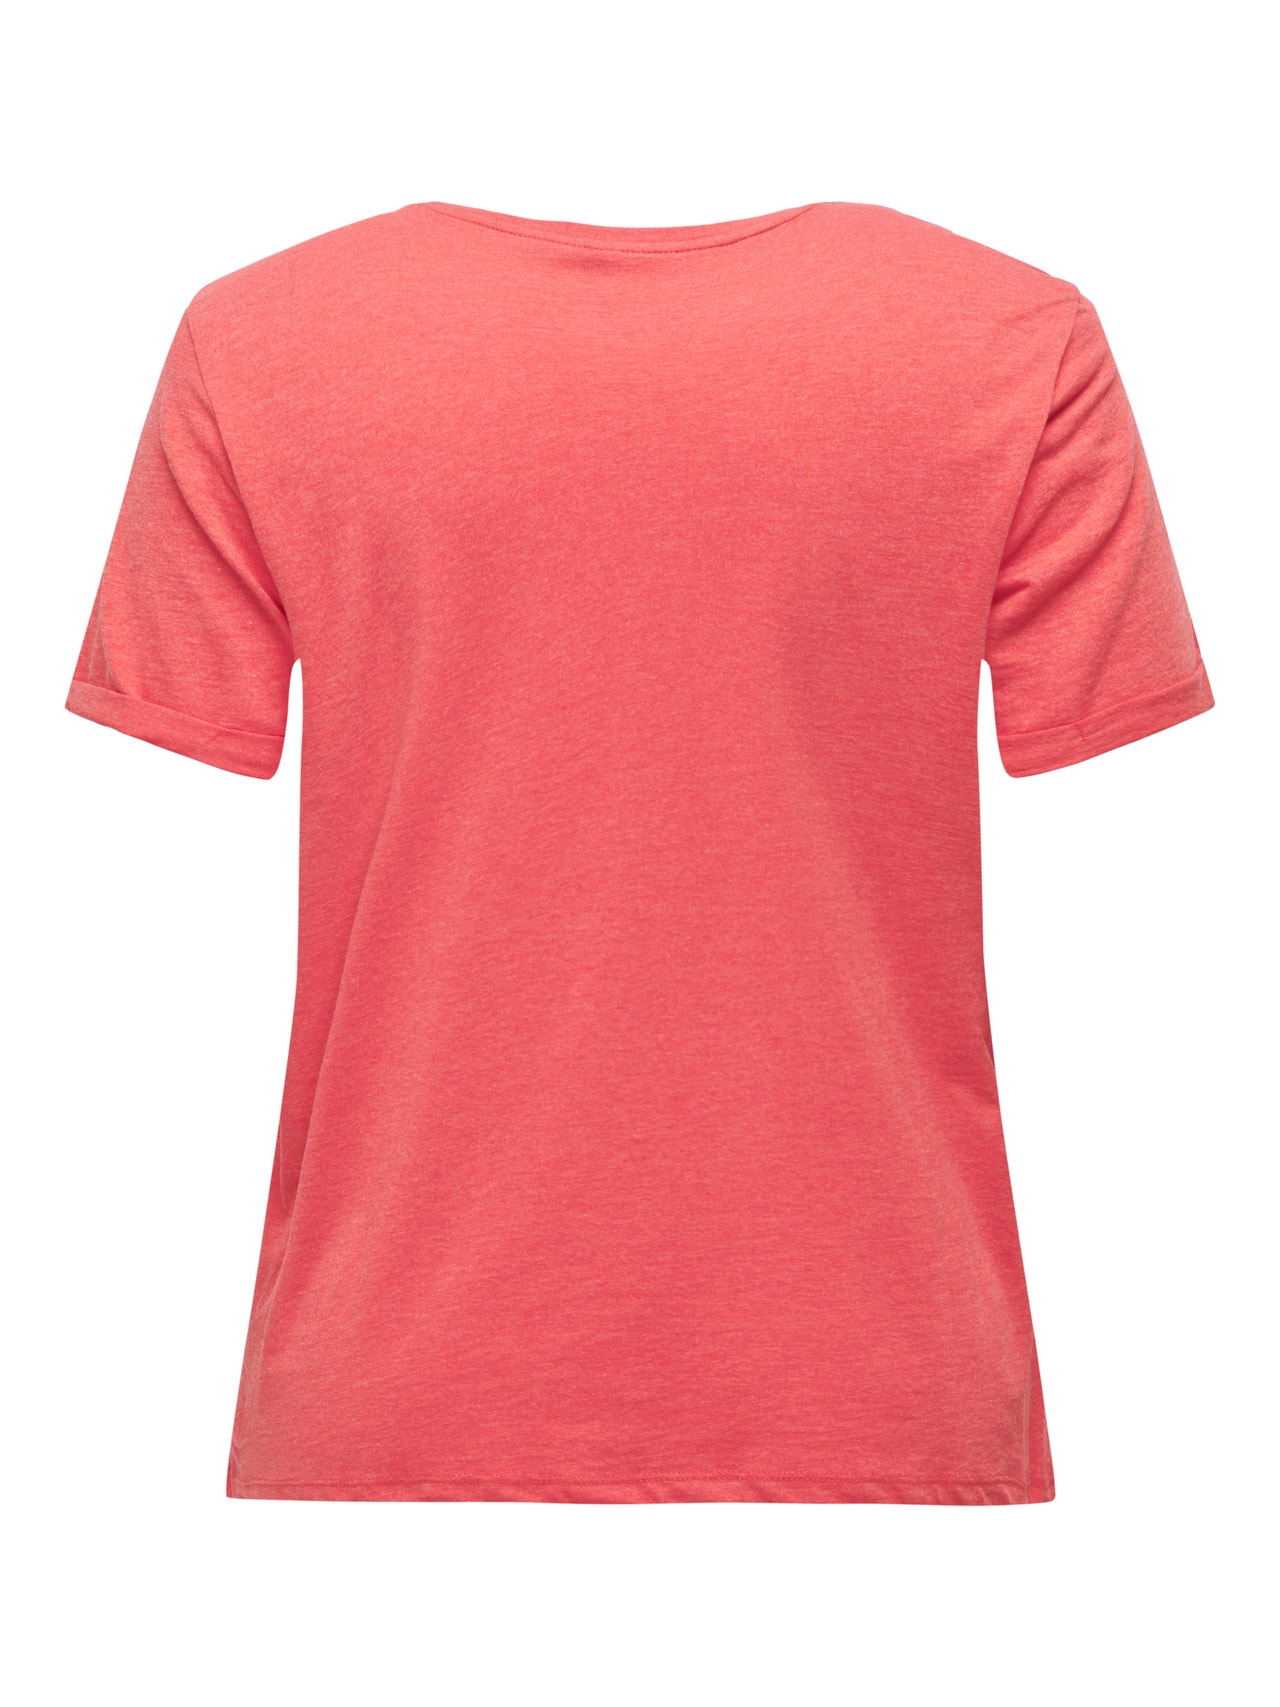 ONLY Normal geschnitten Rundhals T-Shirt -Poppy Red - 15251650